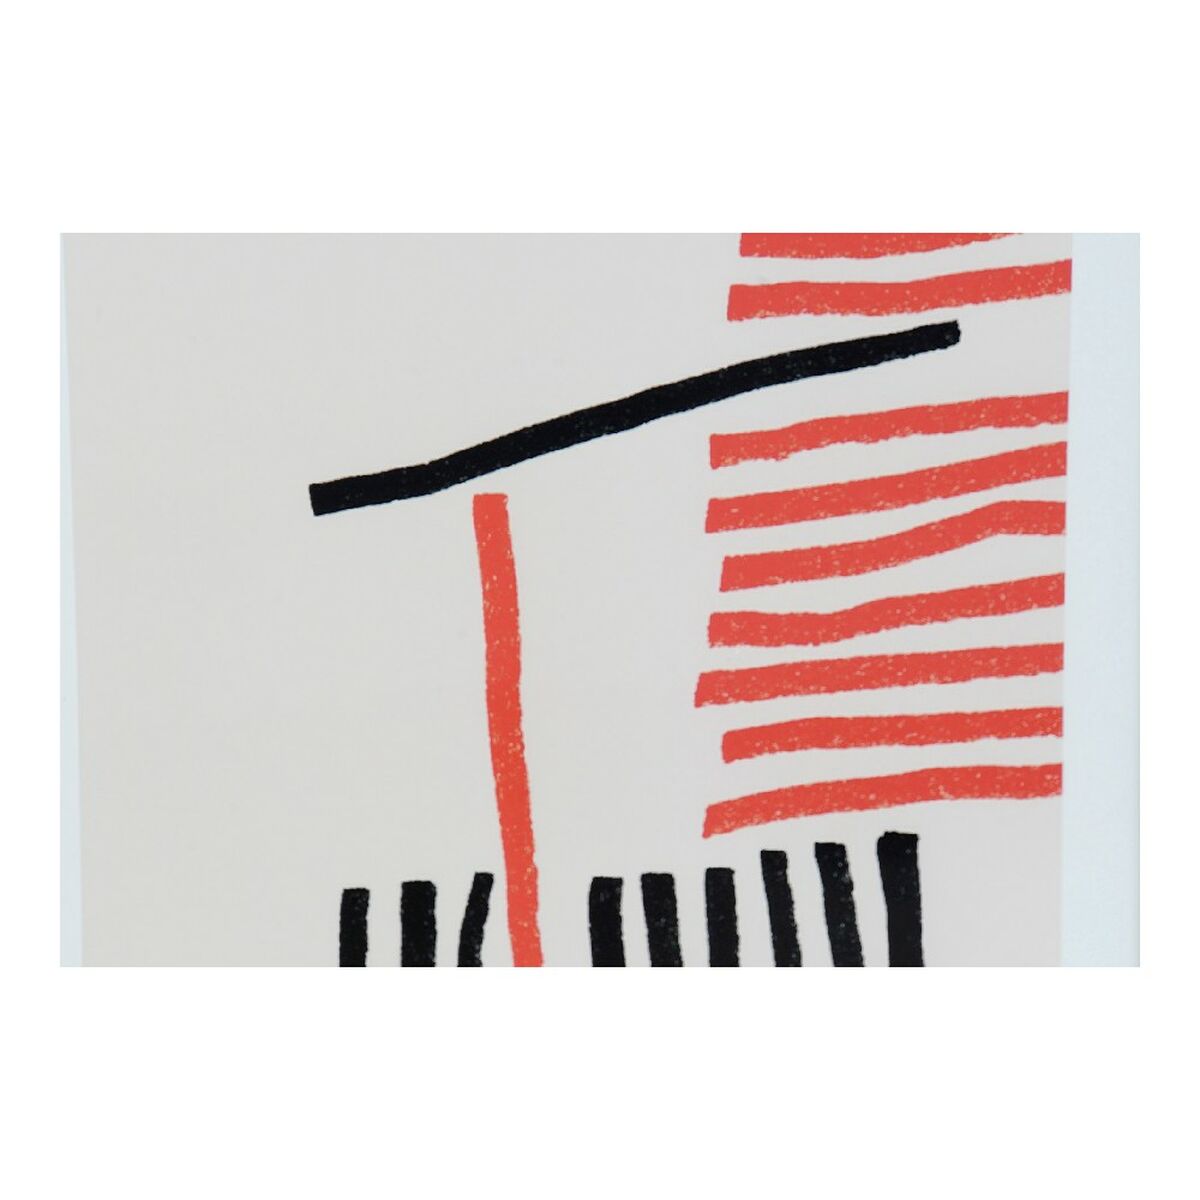 Cadre DKD Home Decor Lines Abstrait Moderne (35 x 3 x 45 cm) (4 Unités)